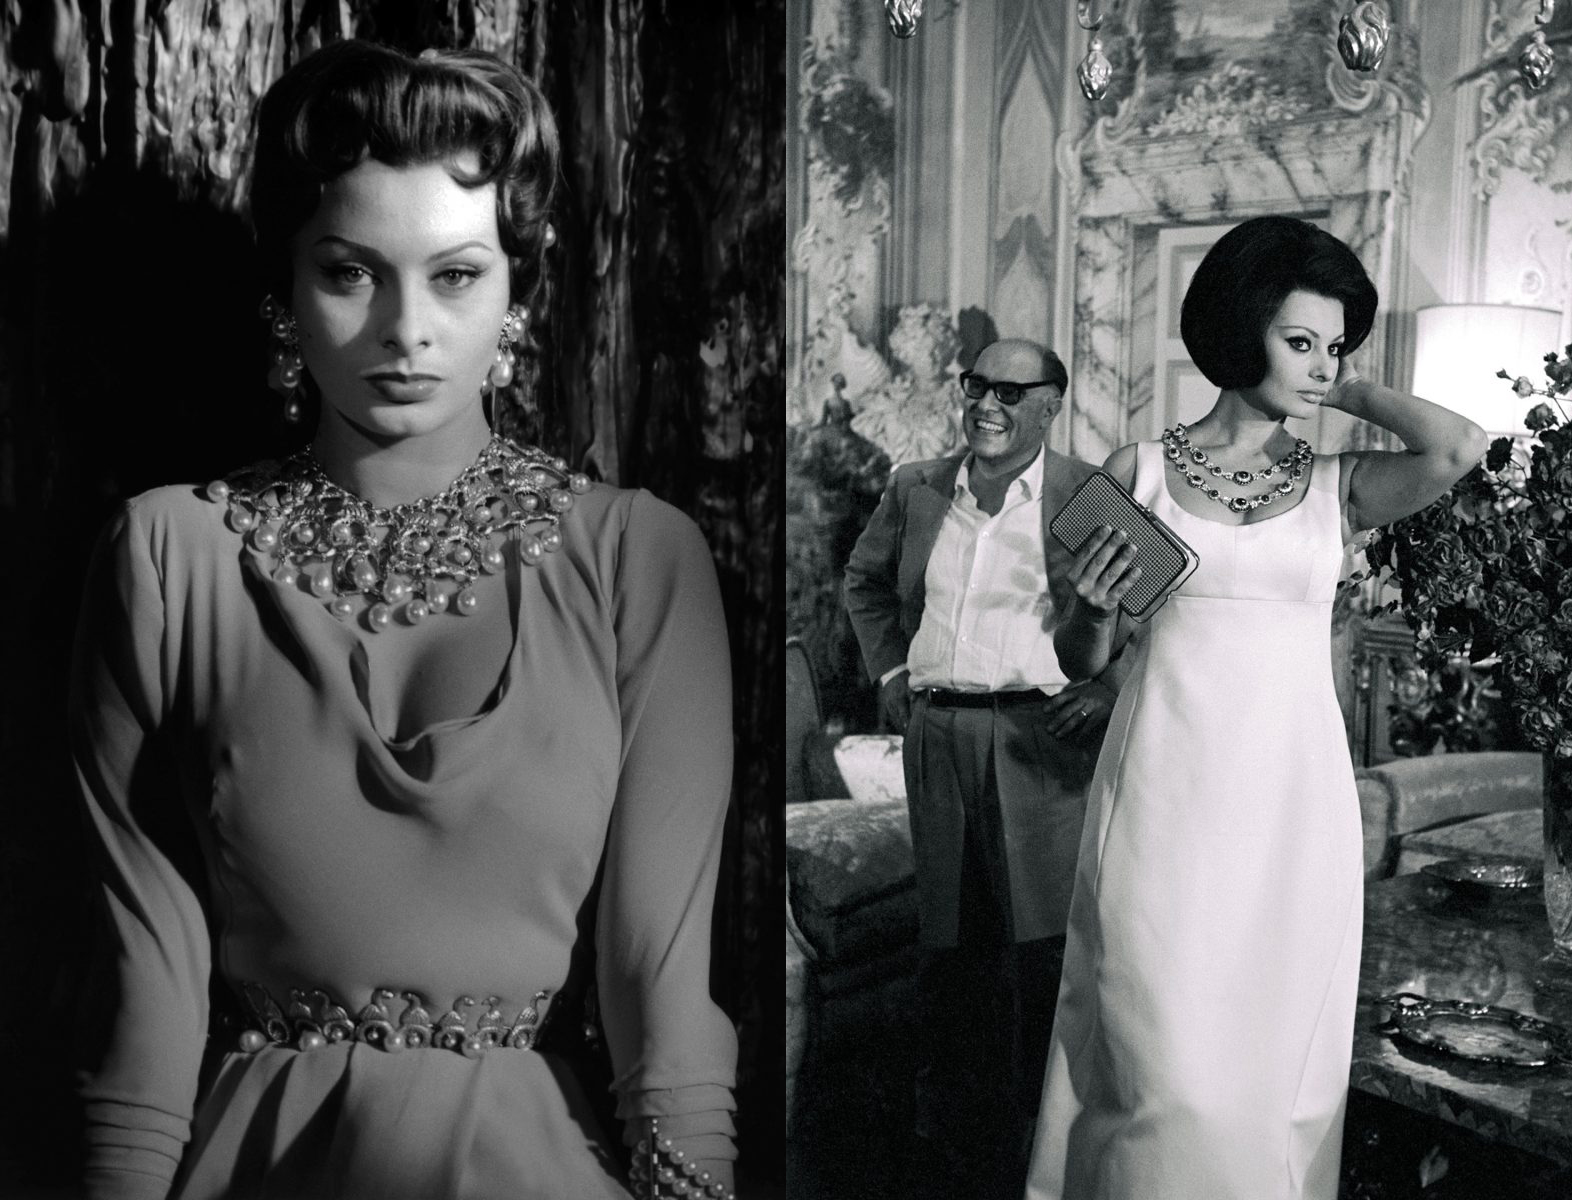 Sophia Loren được mệnh danh là “Gucci sống” với trang phục, phụ kiện, túi xách sang chảnh, mang đậm dấu ấn 'GG' của thương hiệu. Đây cũng chính là hình tượng mà nữ ca sĩ Lady Gaga sẽ hoá thân trong bộ phim 'House of Gucci' (Gia Tộc Gucci)